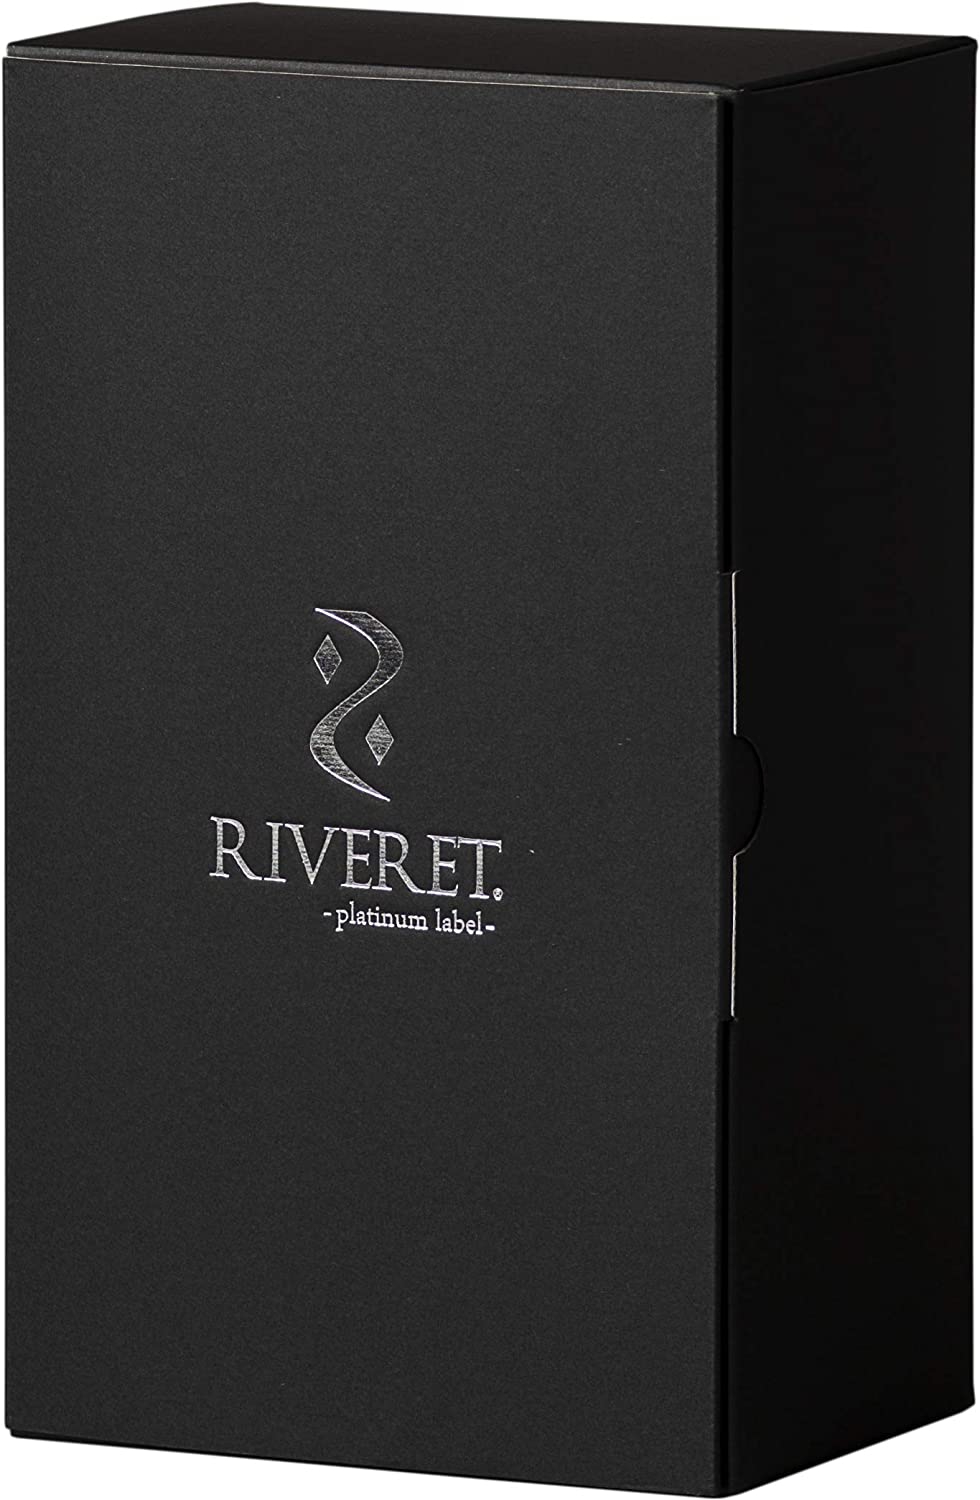 RIVERET(リヴェレット) ビアベッセル RV-114の商品画像6 